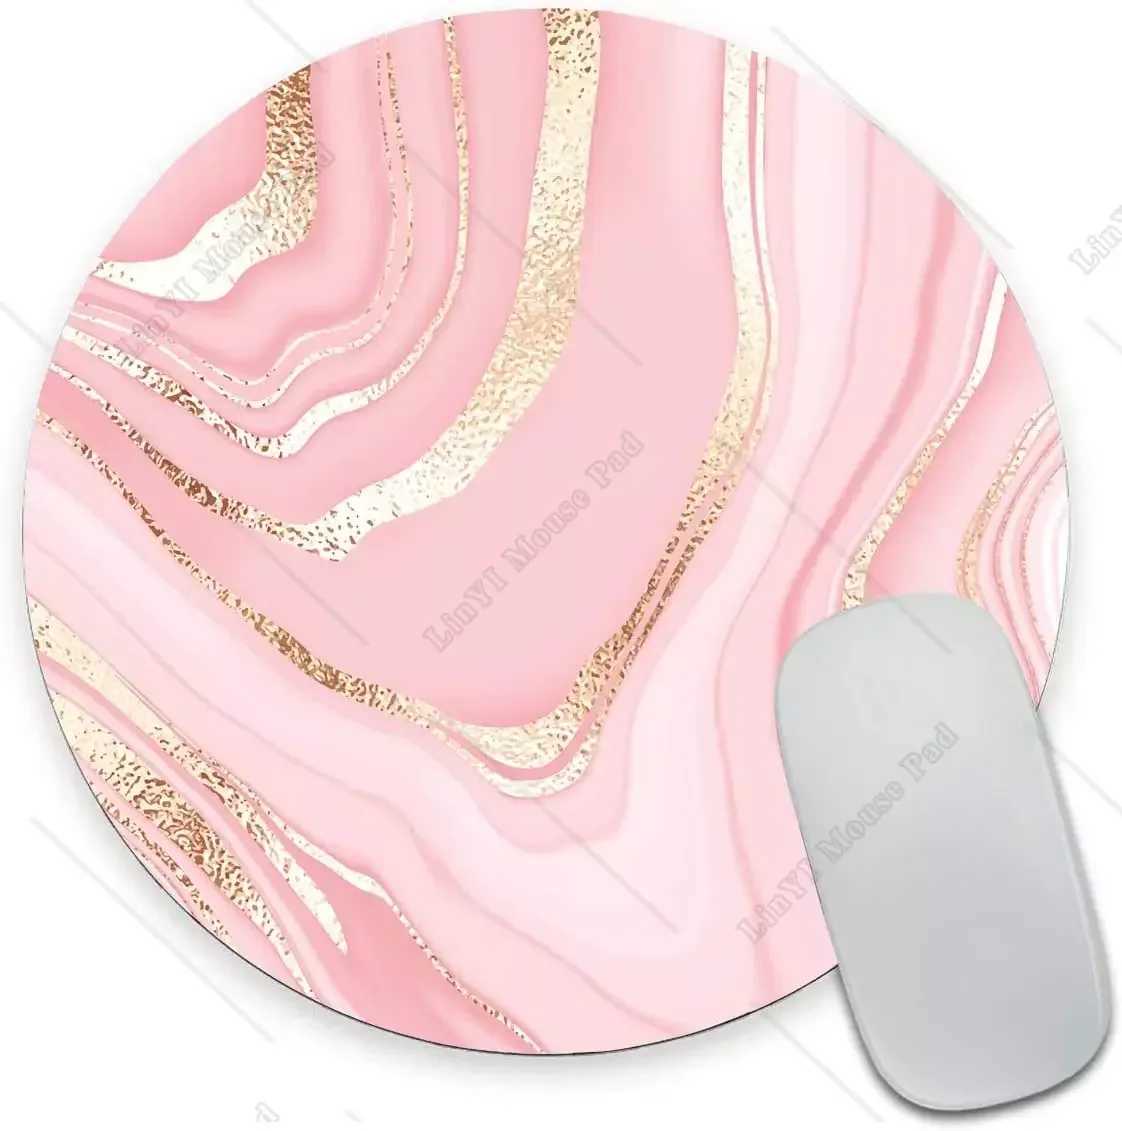 Muisblokken Polstaat Round Round Pink Gold Marble Mouse Pad Premium-getextureerde kleine muismat met waterdichte niet-slip rubberen basis voor kantoorwerkcomputer